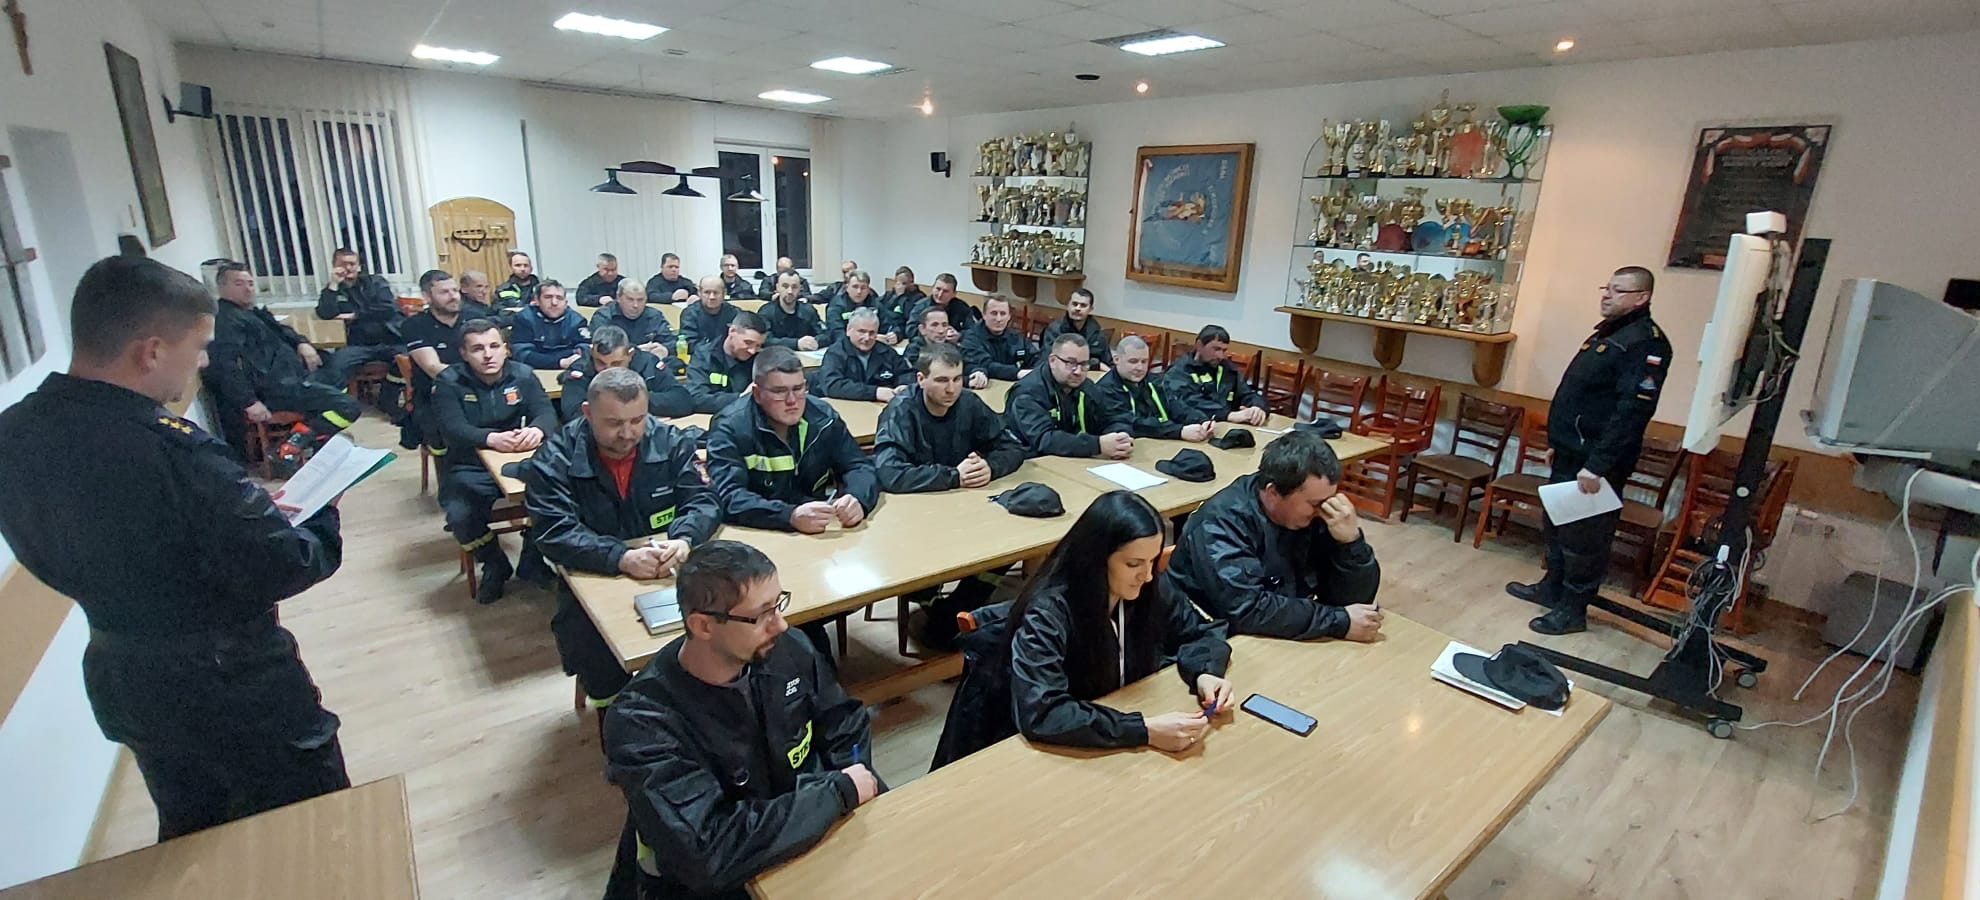 BRZOZÓW: Szkolenie Naczelnika Ochotniczych Straży Pożarnych